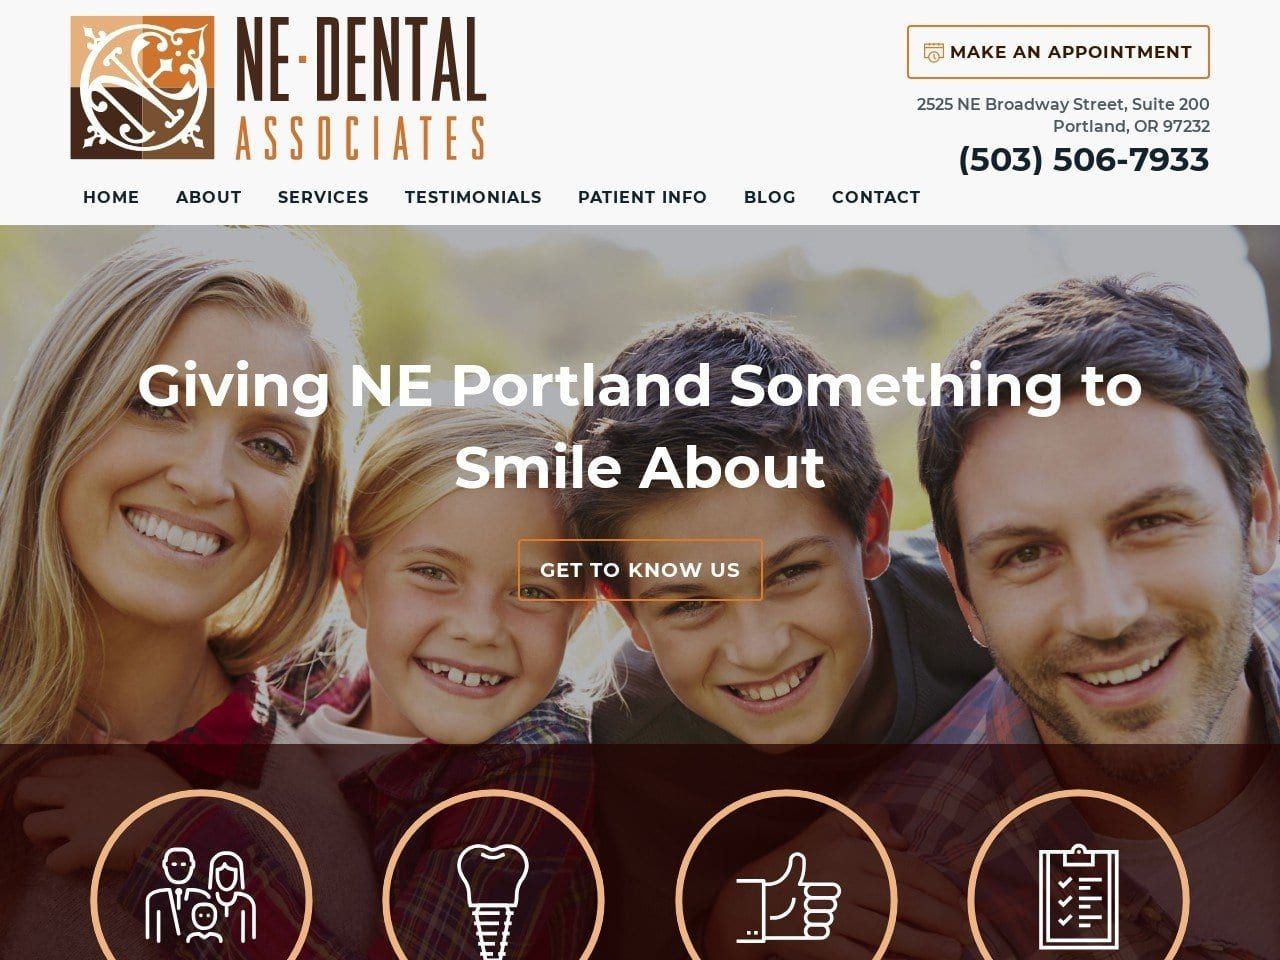 Ne Dental  Associates Website Screenshot from nedentalassociates.com